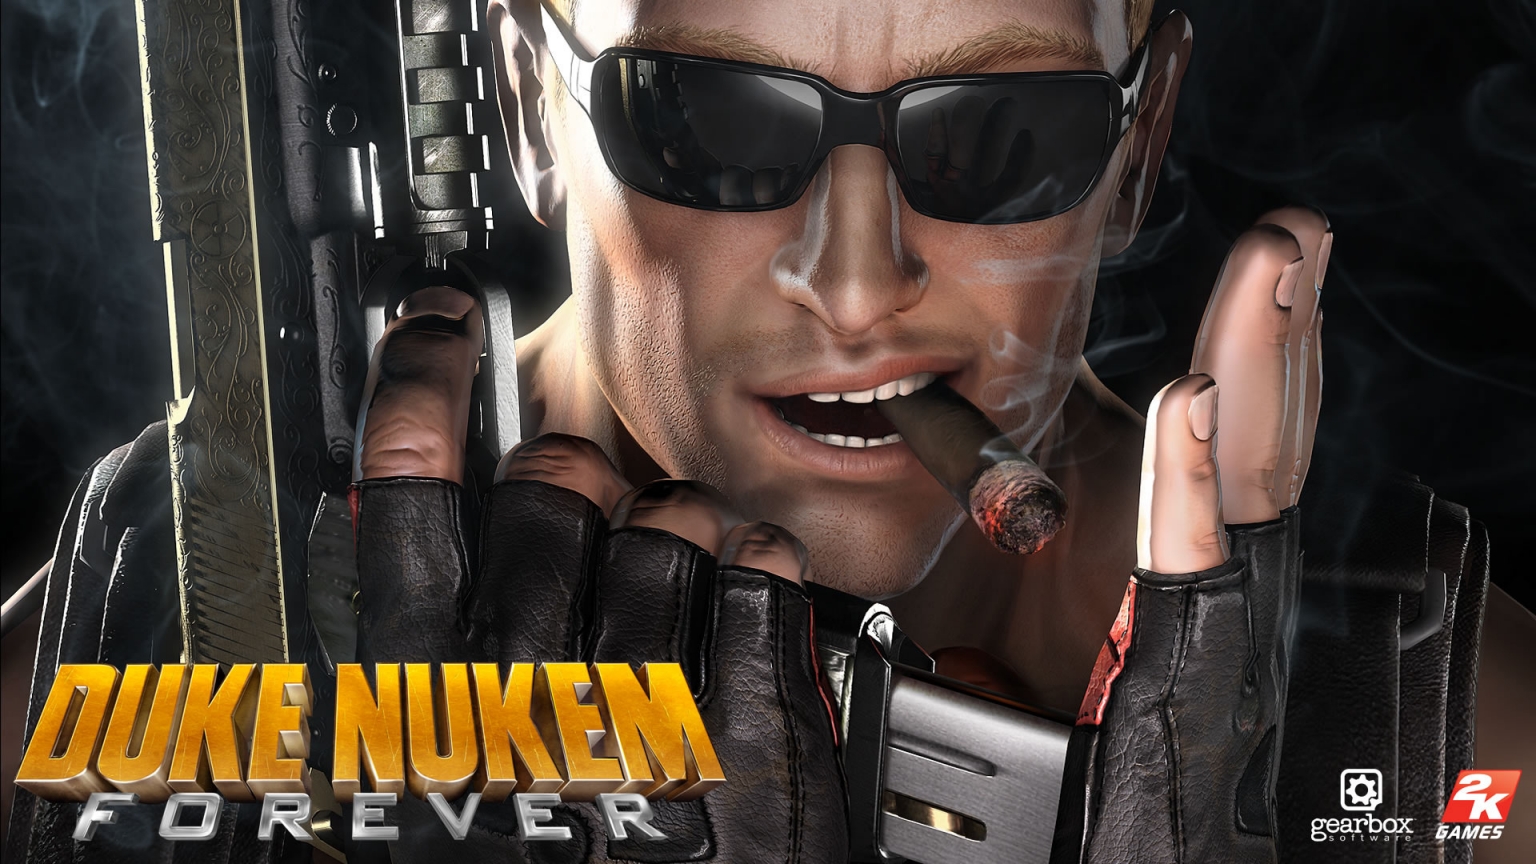 Duke Nukem Forever for 1536 x 864 HDTV resolution